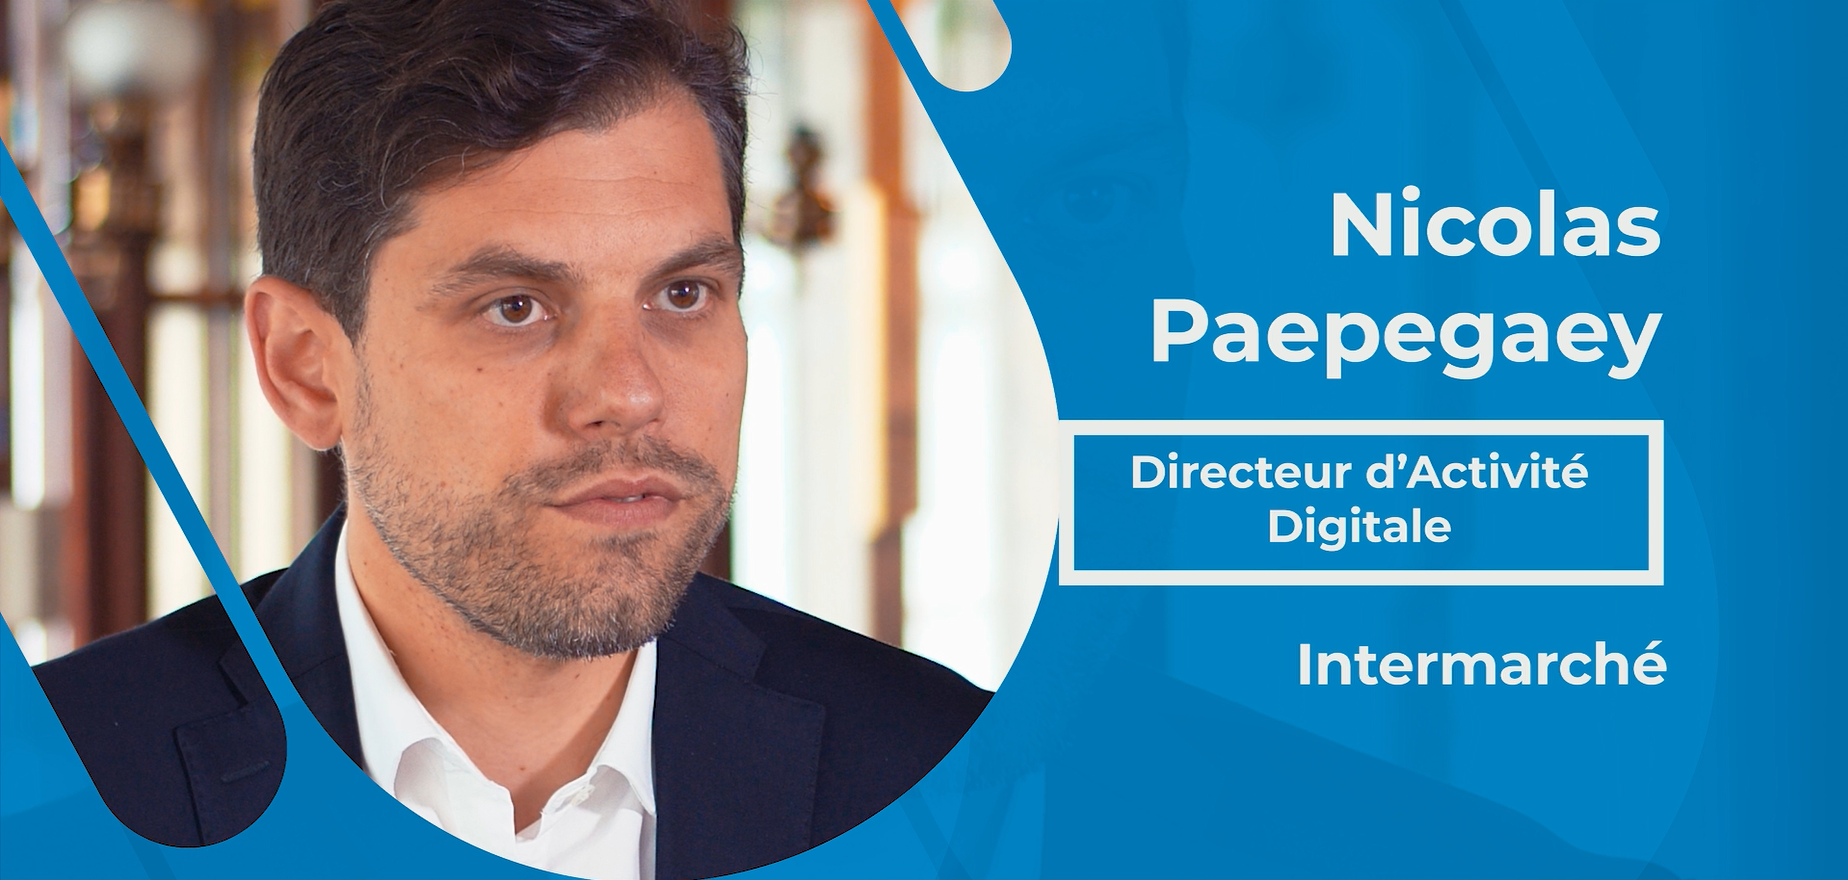 Actualités : Interview Nicolas Paepegaey - Directeur d'activité digitale chez Intermarché